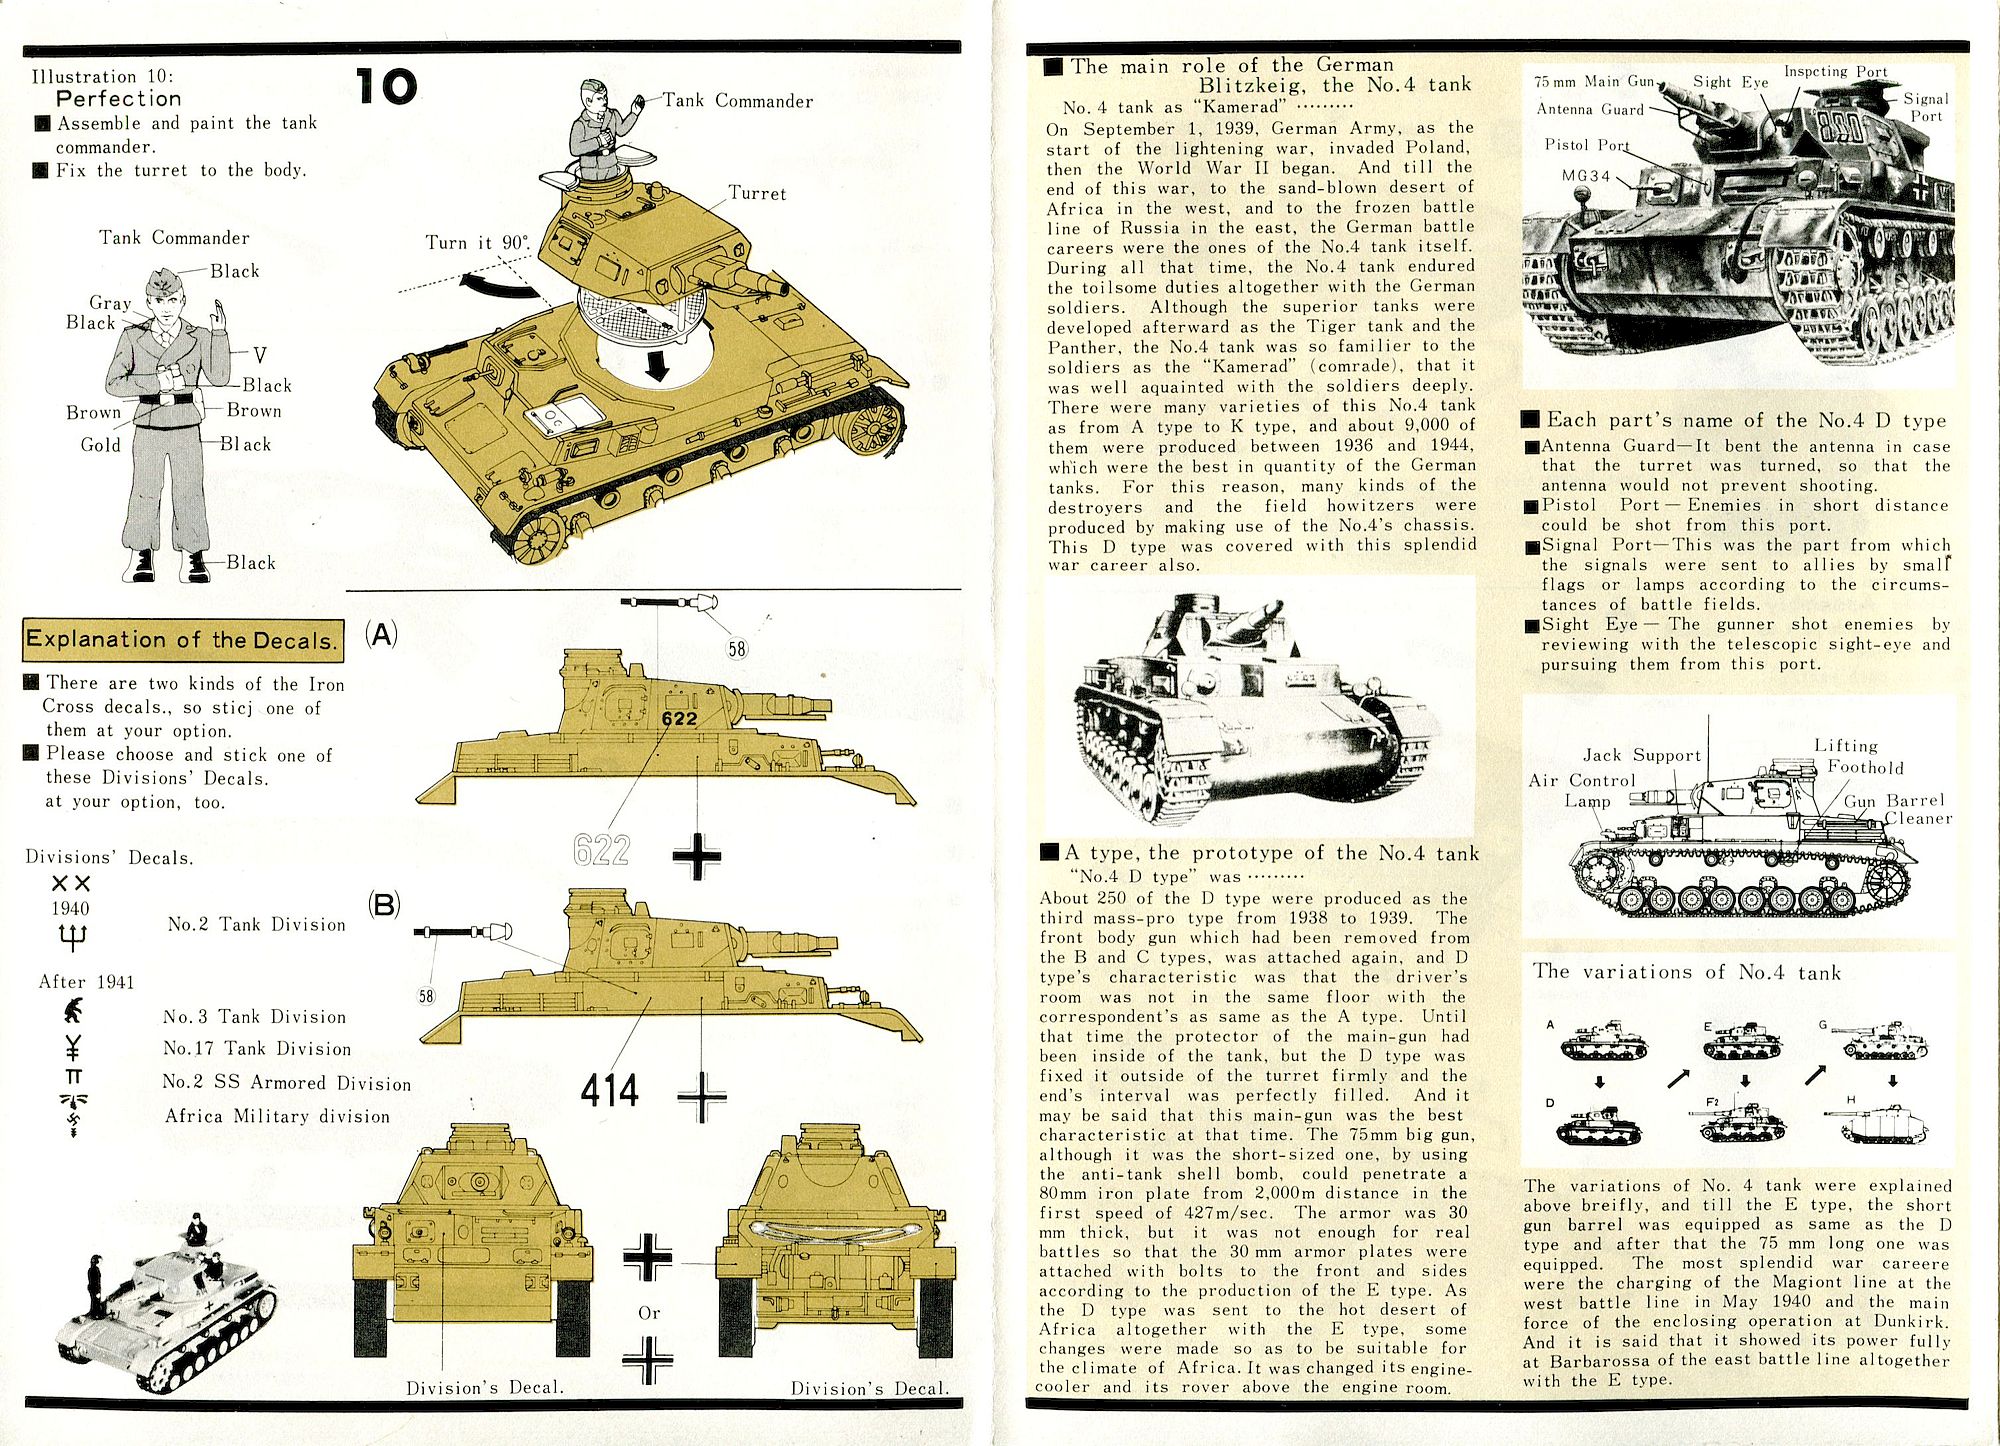 Обзор Panzerkampfwagen IV Ausf. D от комнапии Bandai в масштабе 1/48